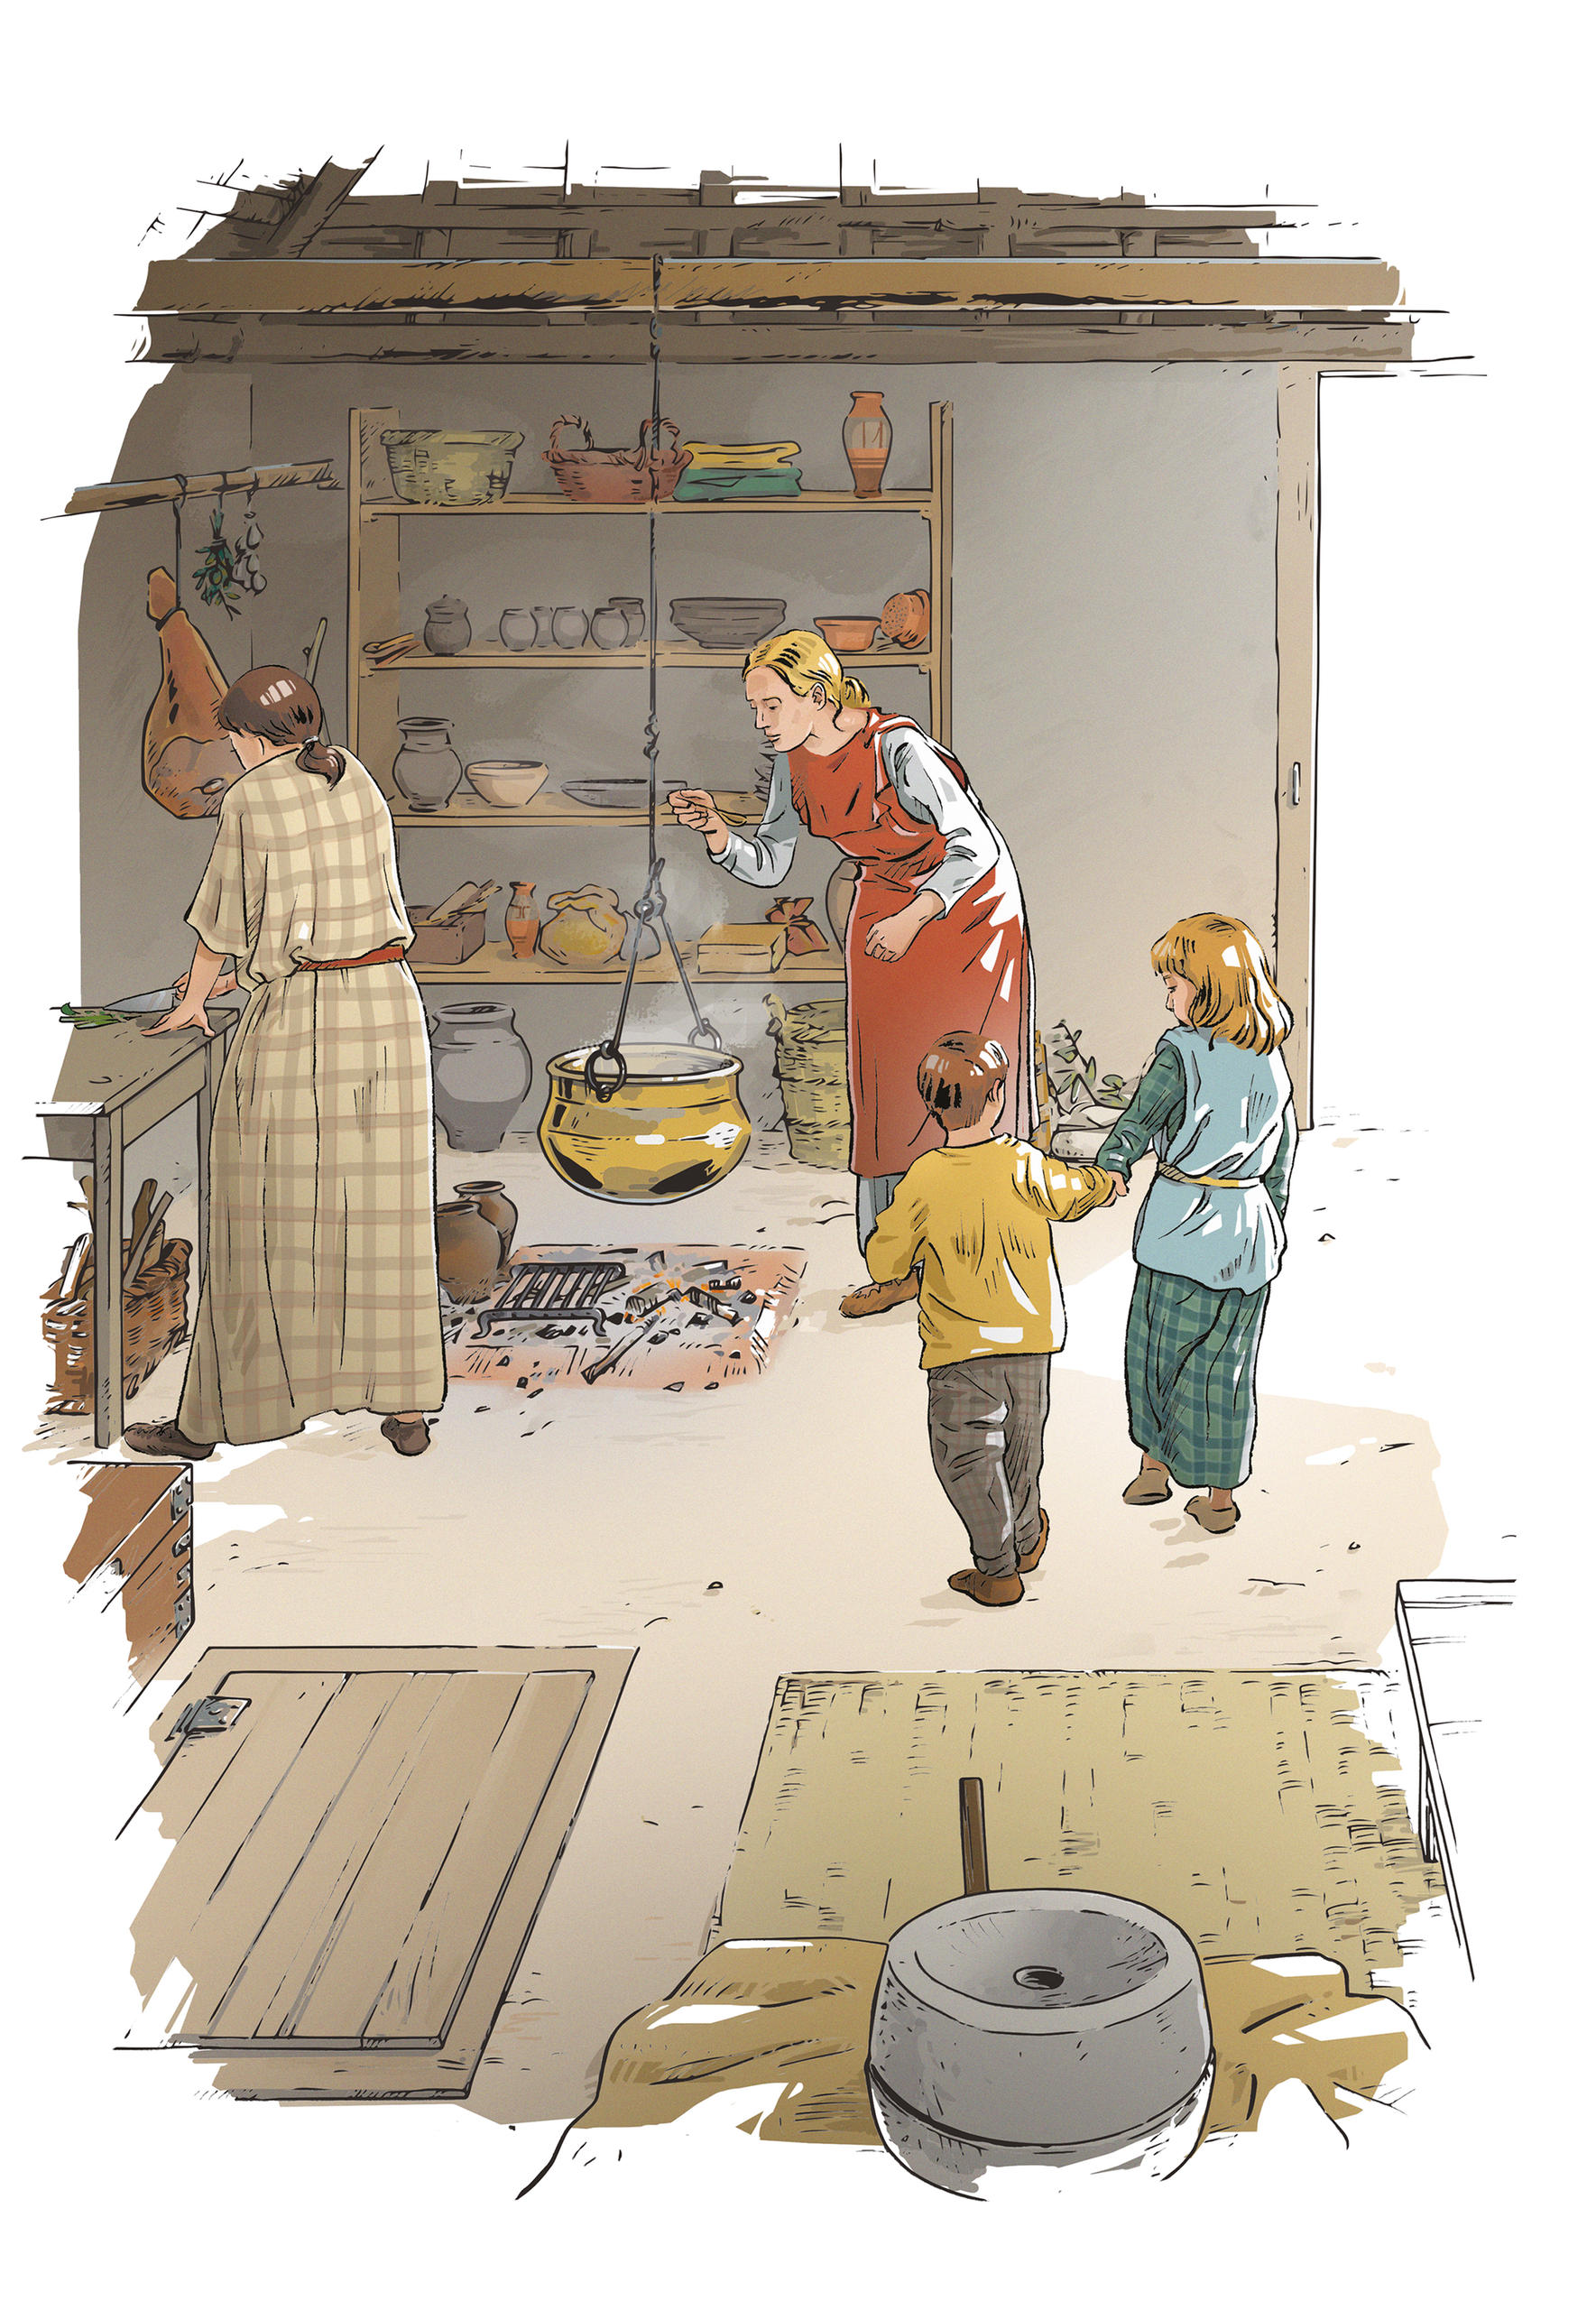 Raffigurazione di una cucina gallica